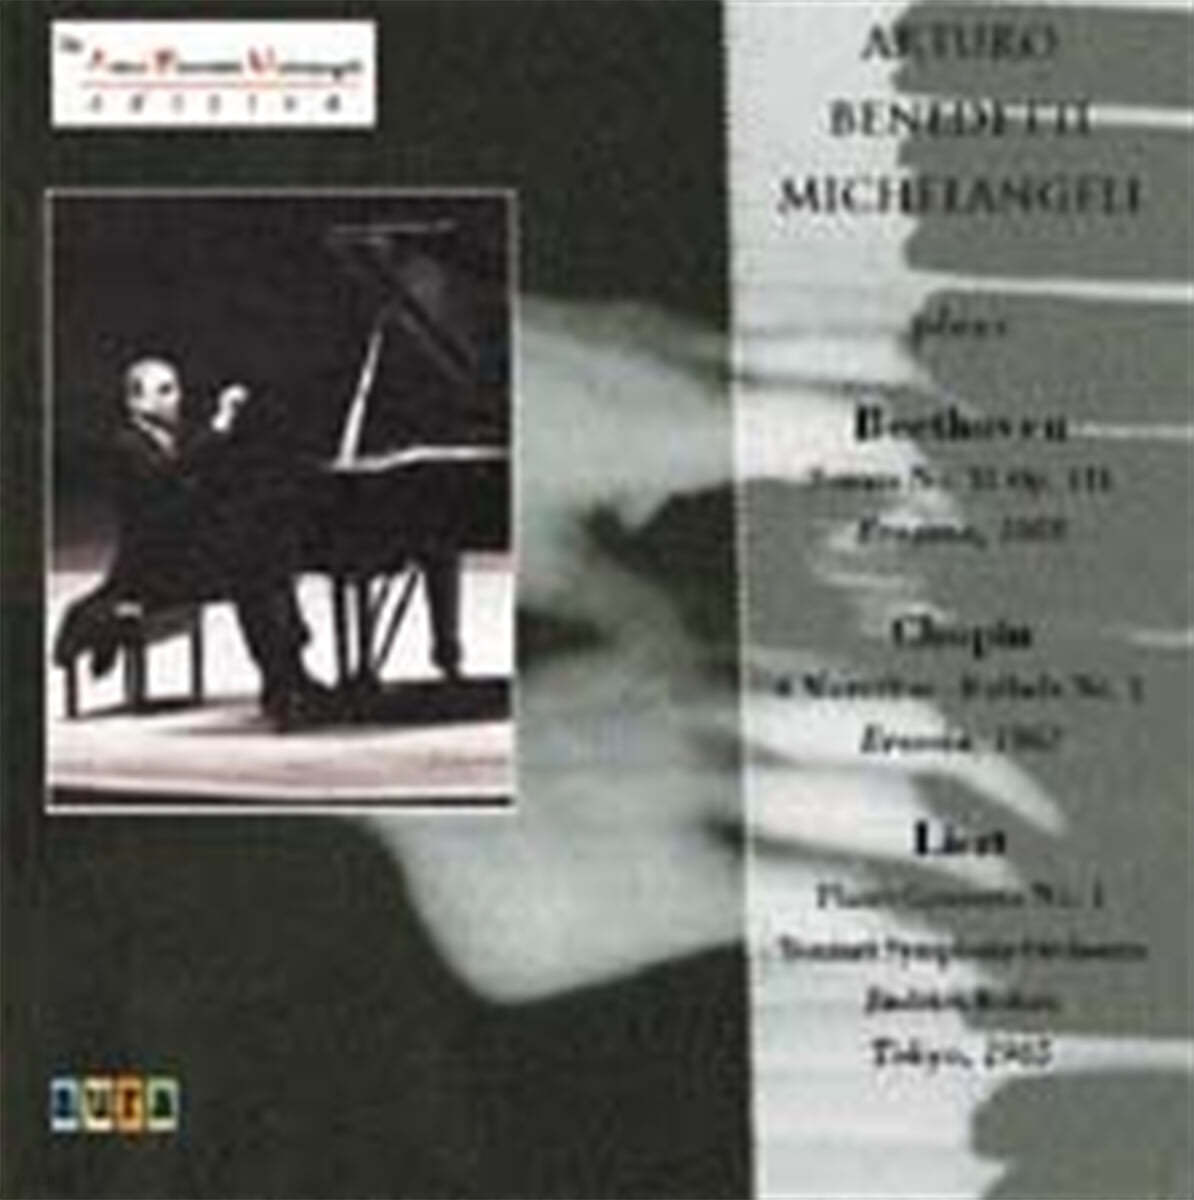 Arturo Benedetti Michelangeli 리스트: 피아노 협주곡 1번 / 베토벤: 피아노 소나타 32번 (Liszt: Piano Concerto No.1 / Beethoven: Piano Sonata No.32) 